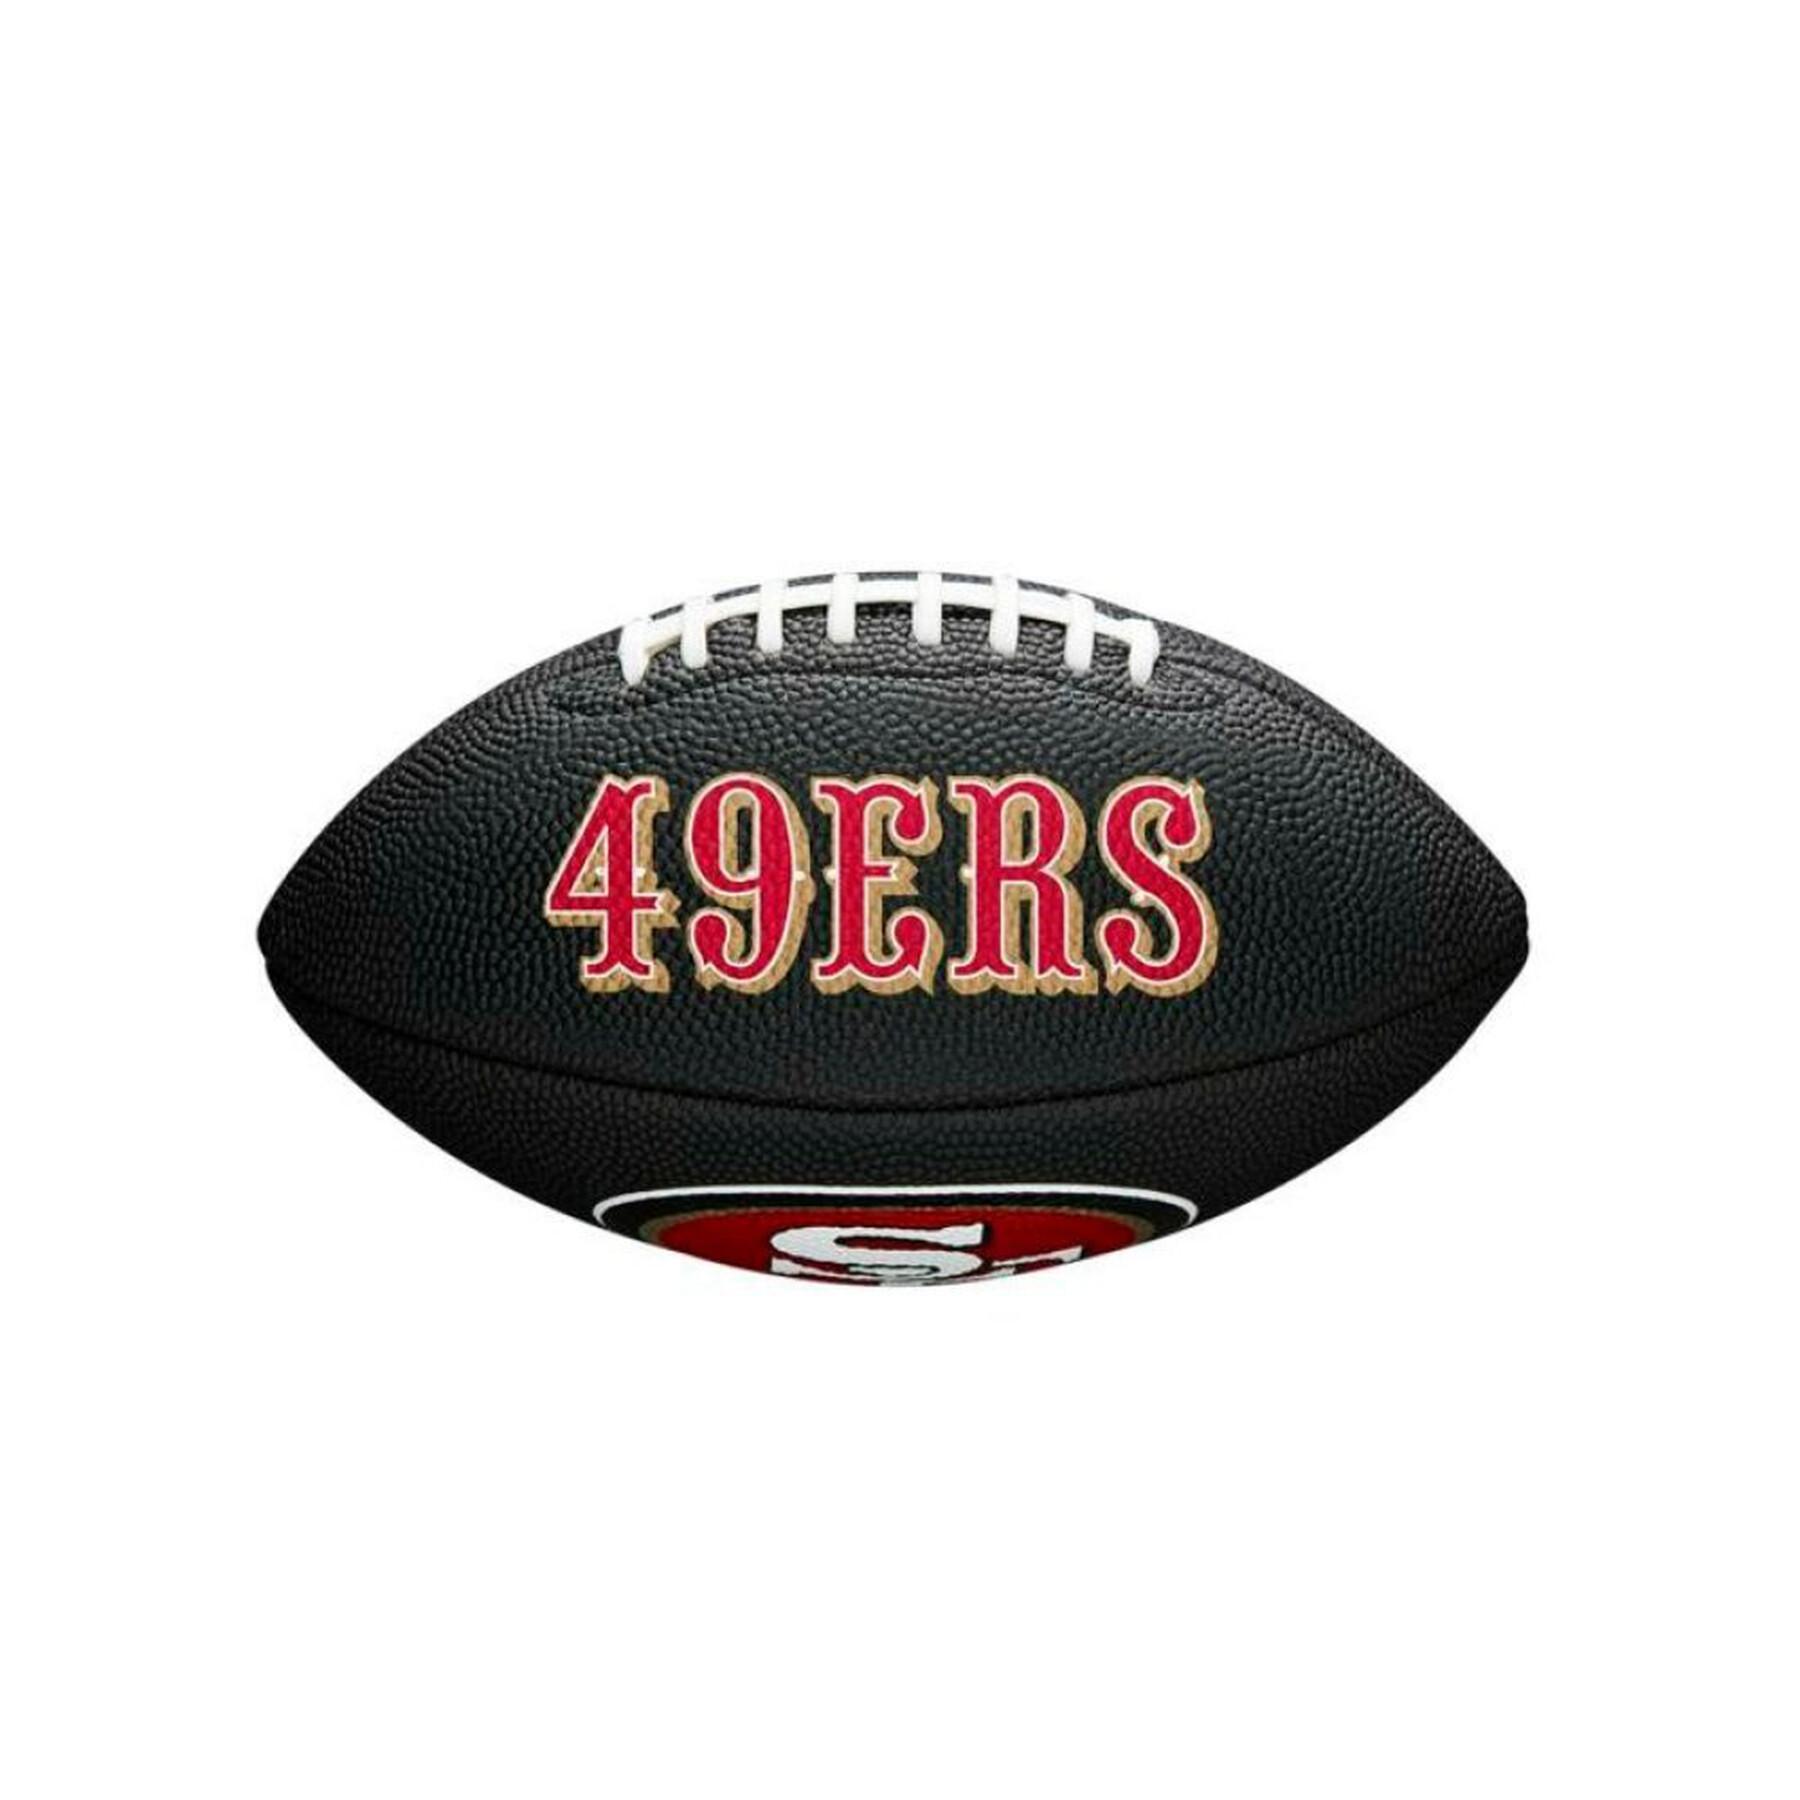 Mini palla per bambini Wilson 49ers NFL